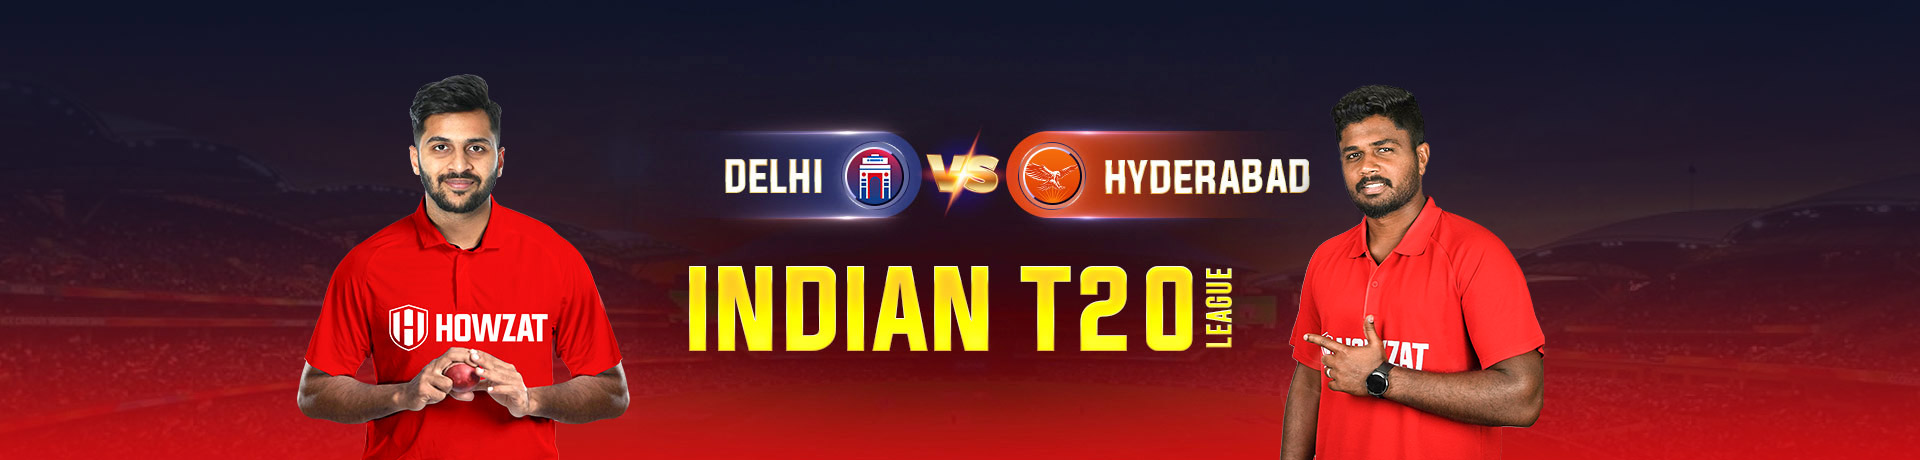 Delhi vs Hyderabad  Indian T20 League